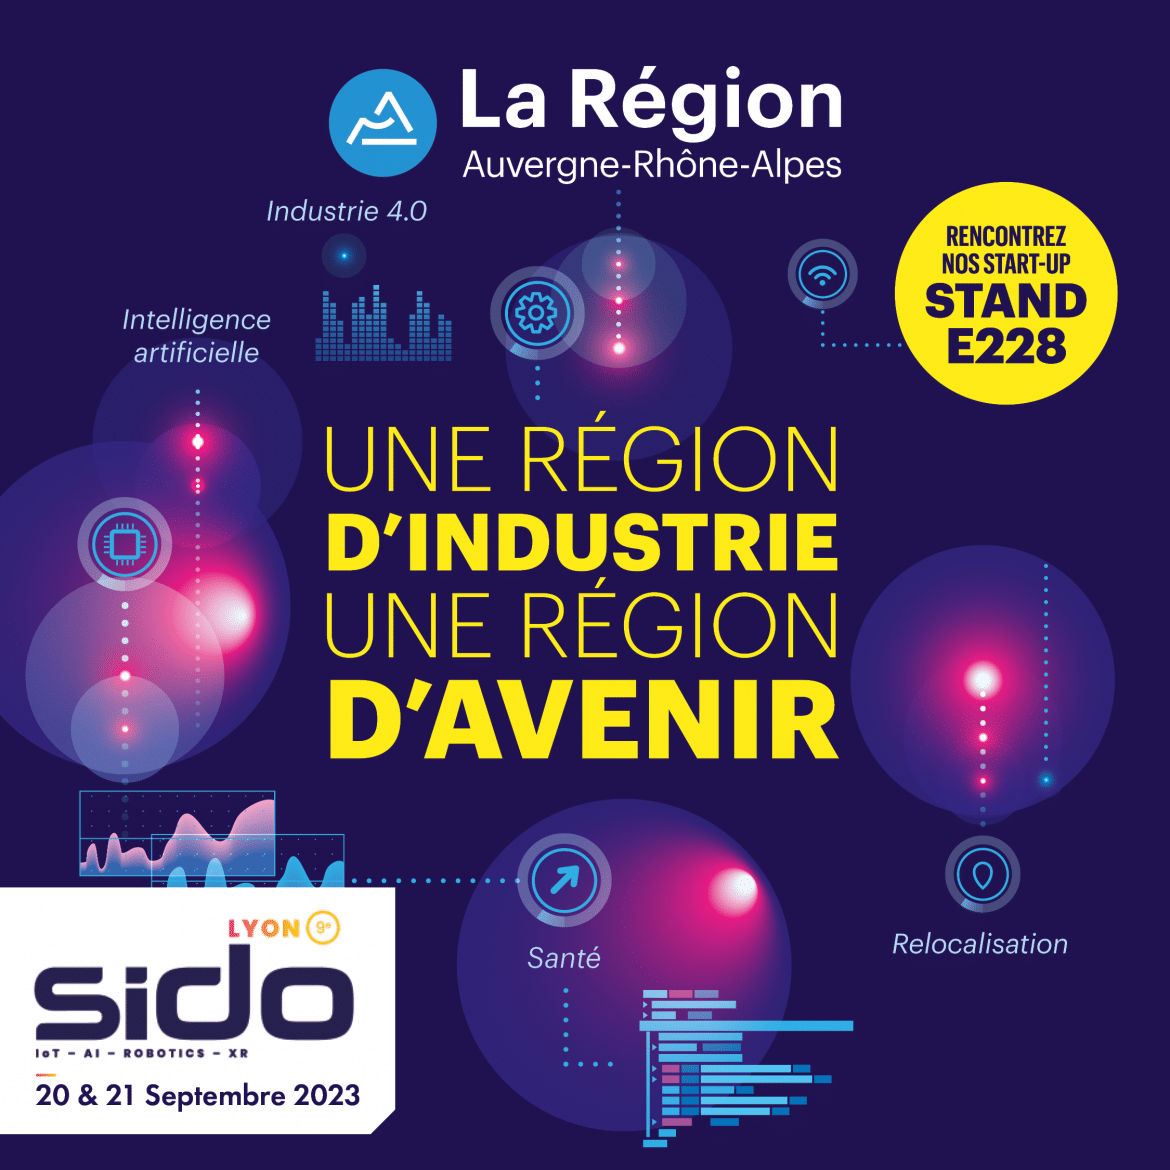 Die SIDO findet am 20. und 21. September in Lyon statt! Effidence wird am Stand der Region Auvergne-Rhône-Alpes vertreten sein.